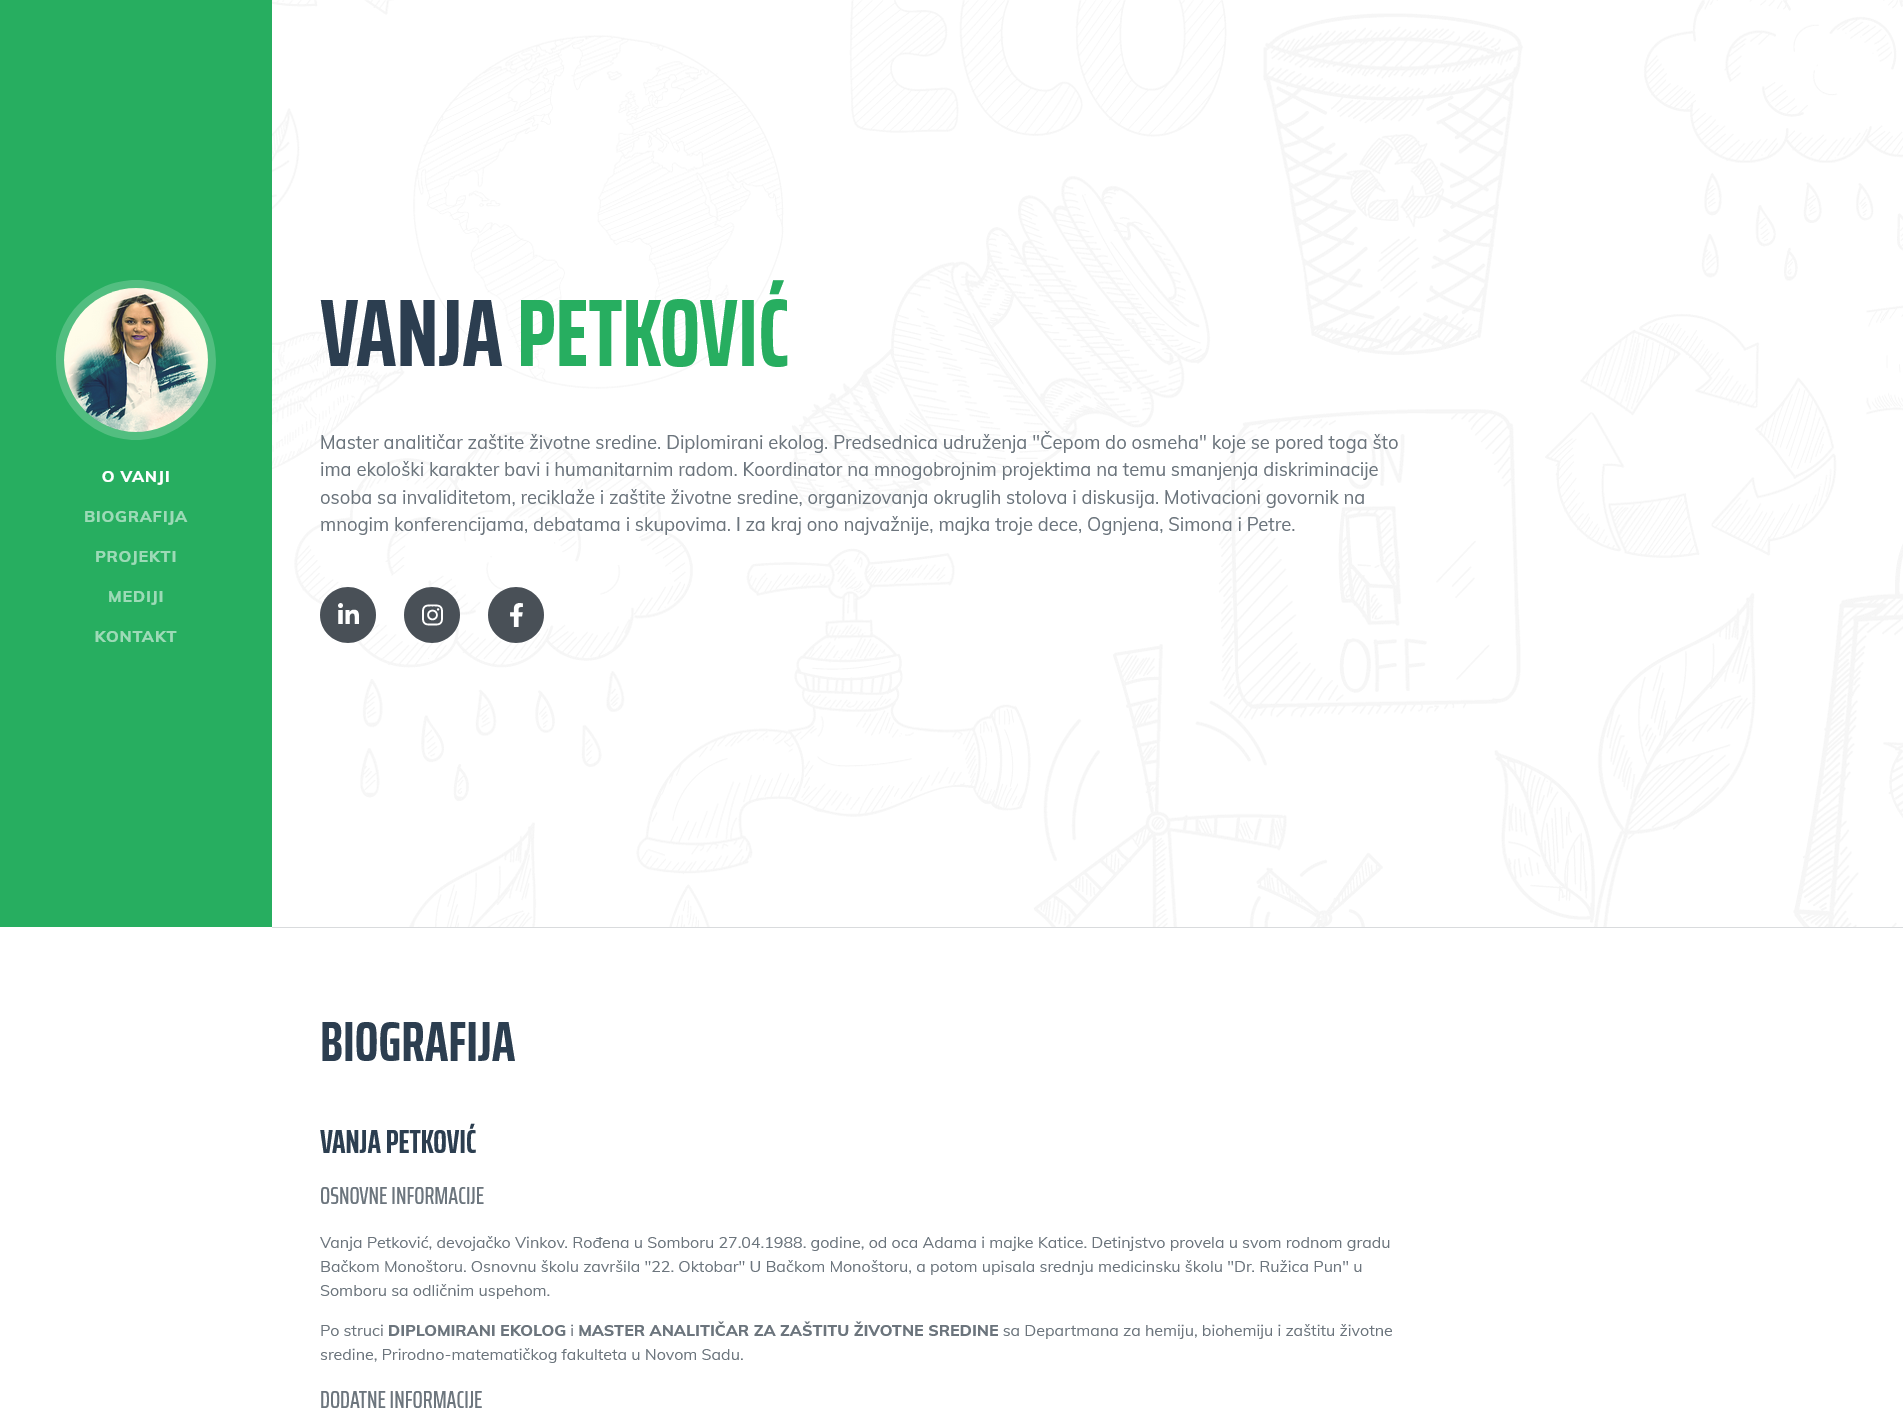 Vanja Petković